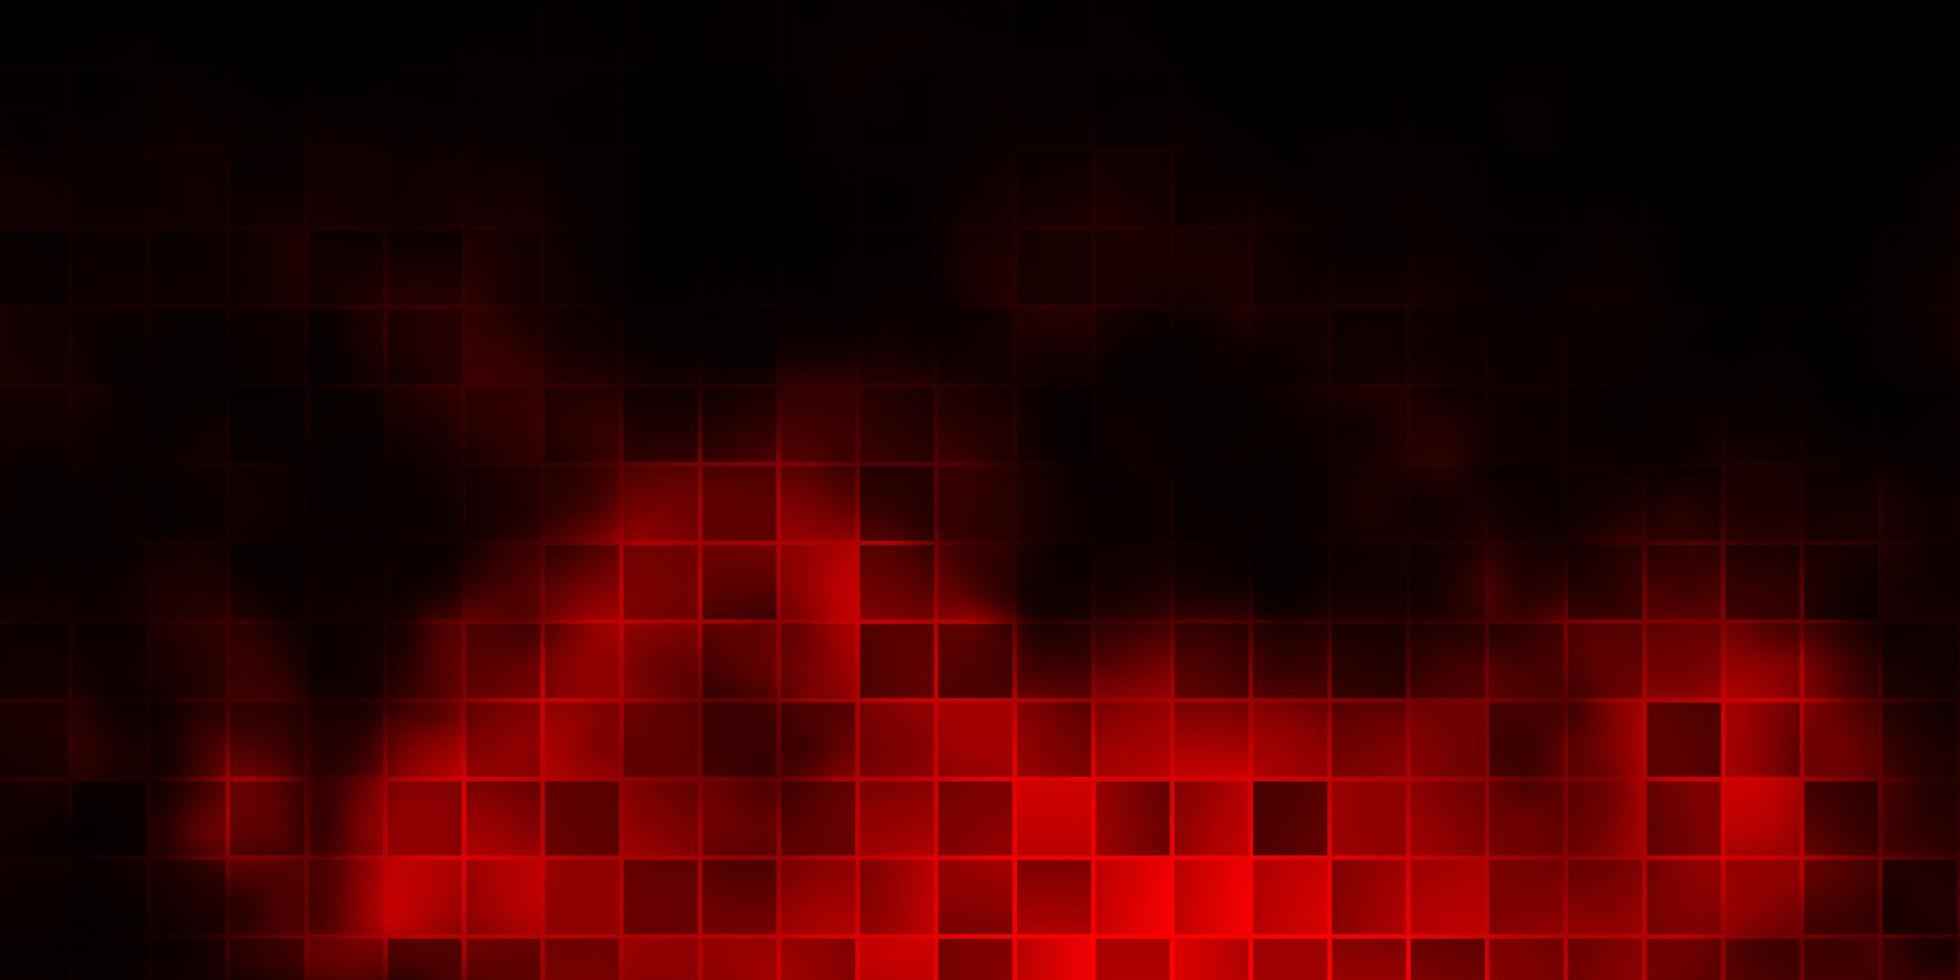 trama vettoriale rosso scuro in stile rettangolare.